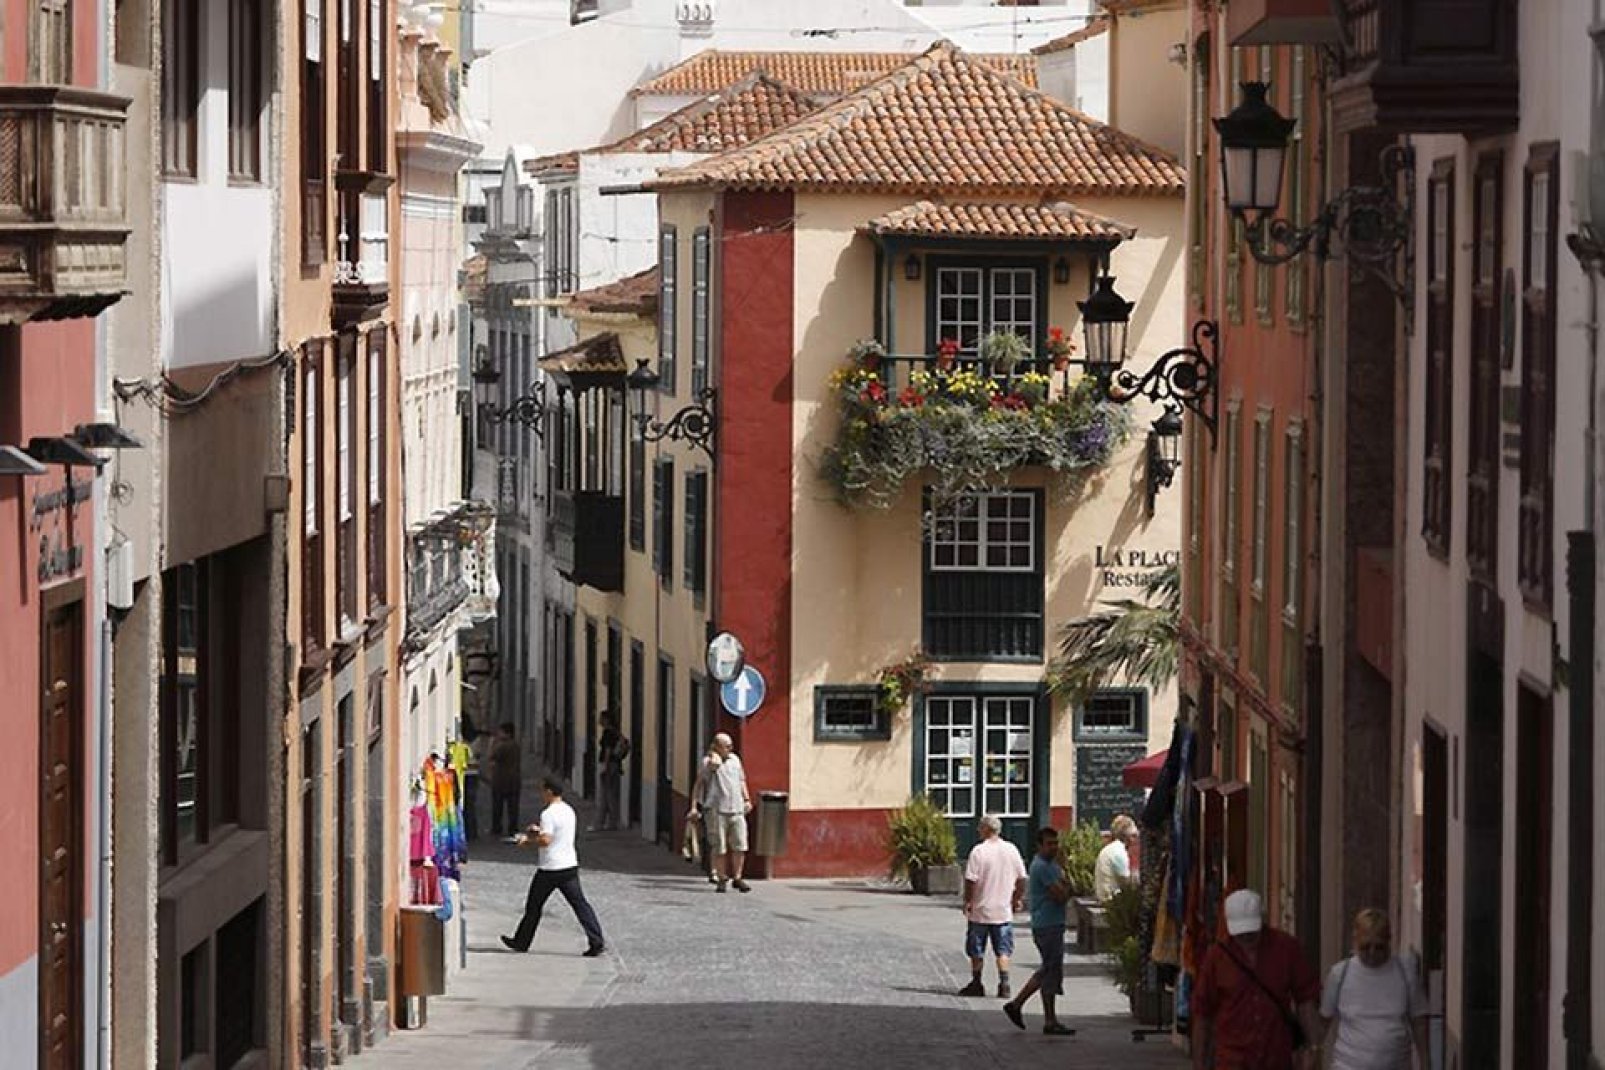 Machen Sie unbedingt eine Abstecher zur Straße San Sebastian, wo Sie einen stimmungsvollen Spaziergang inmitten von inseltypischer Architektur und Kulturdenkmälern unternehmen können.